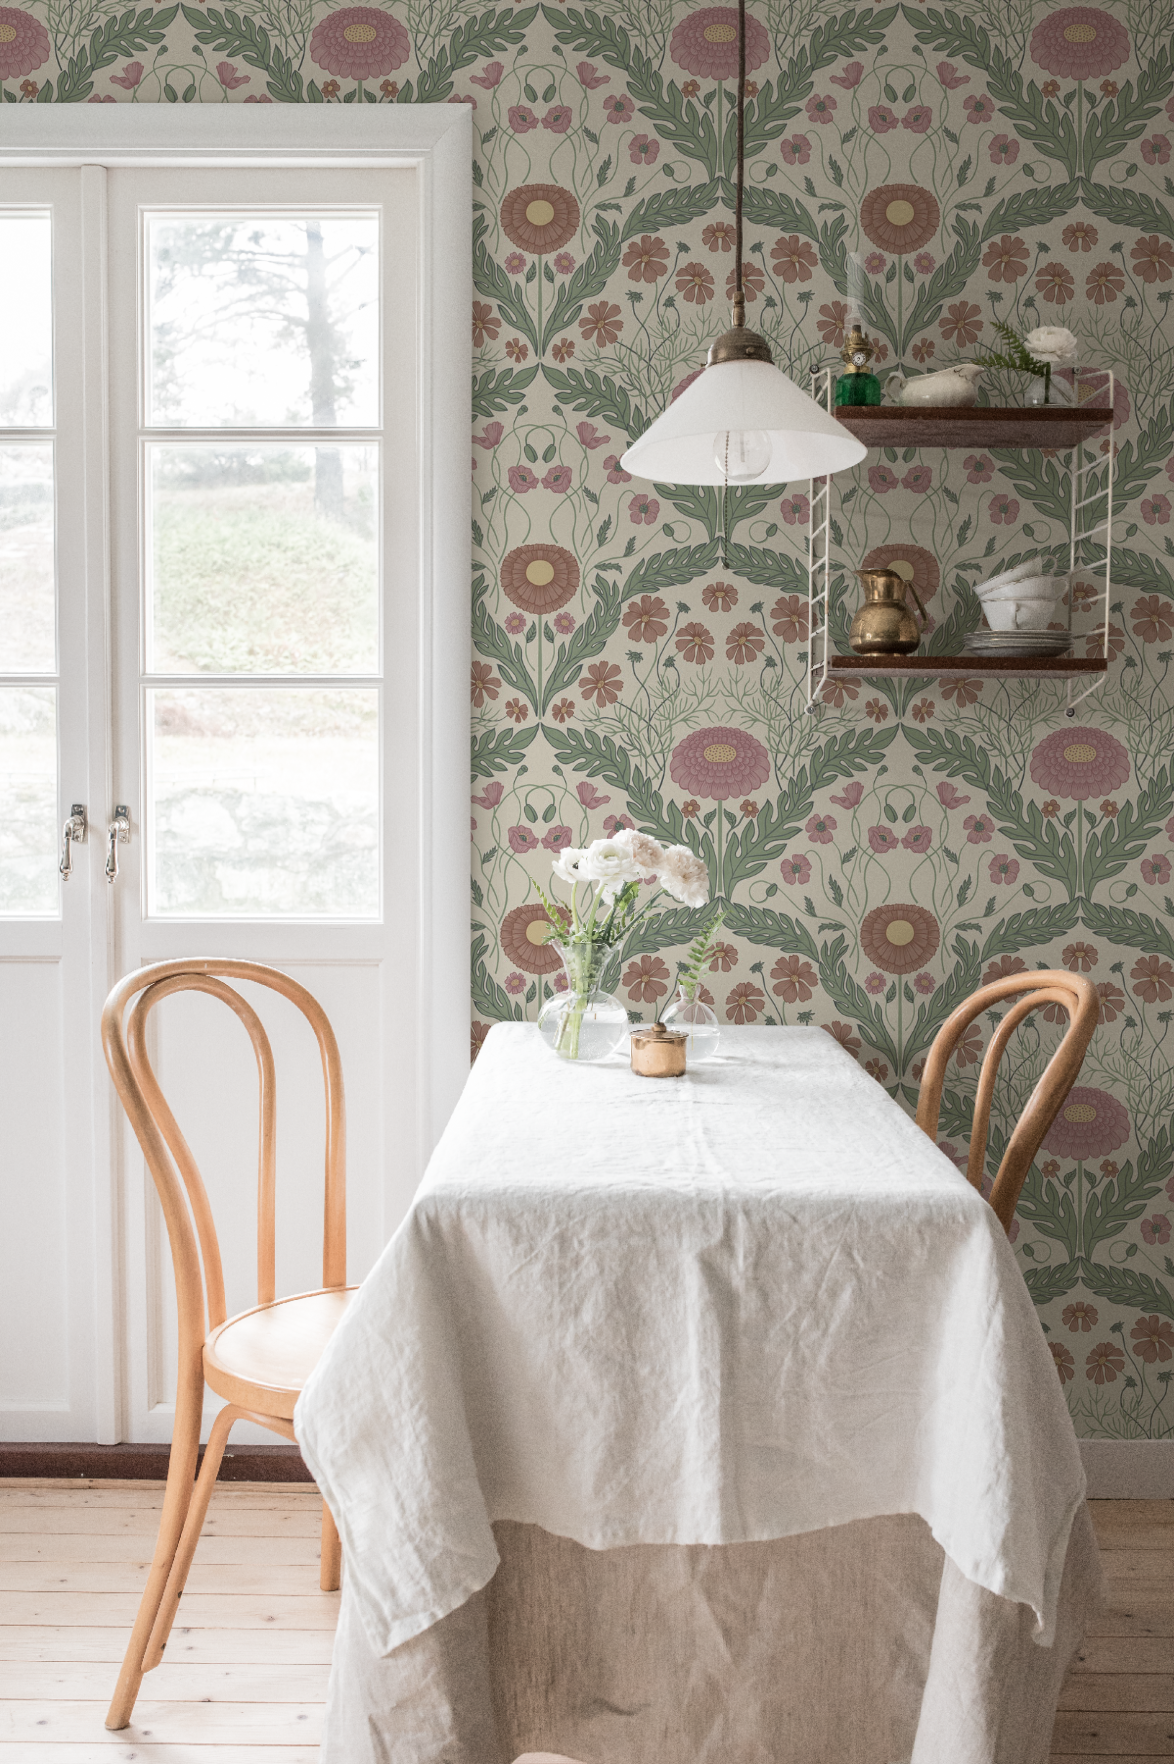 Bloemenbehang - Marguerite, Bloemen & Bladeren - Roze & Groen